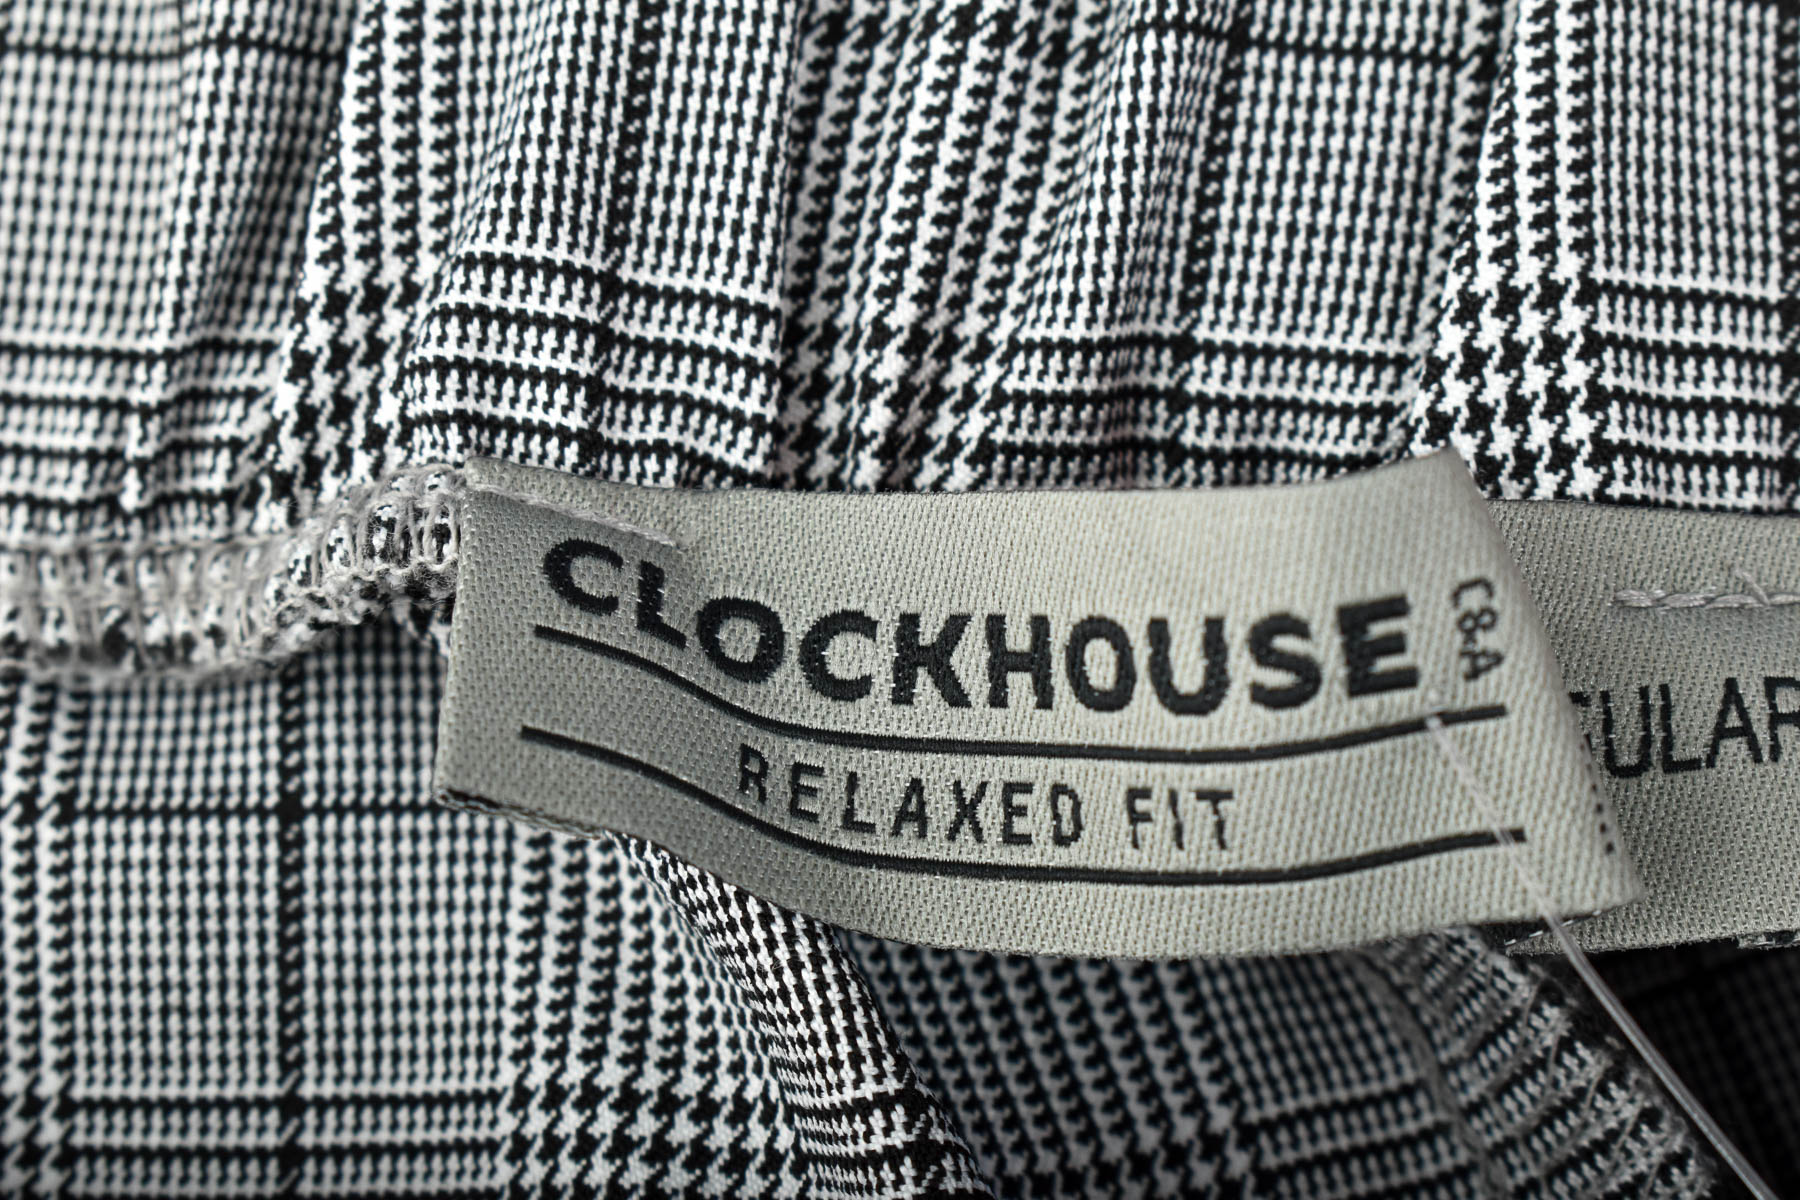 Spodnie damskie - Clockhouse - 2